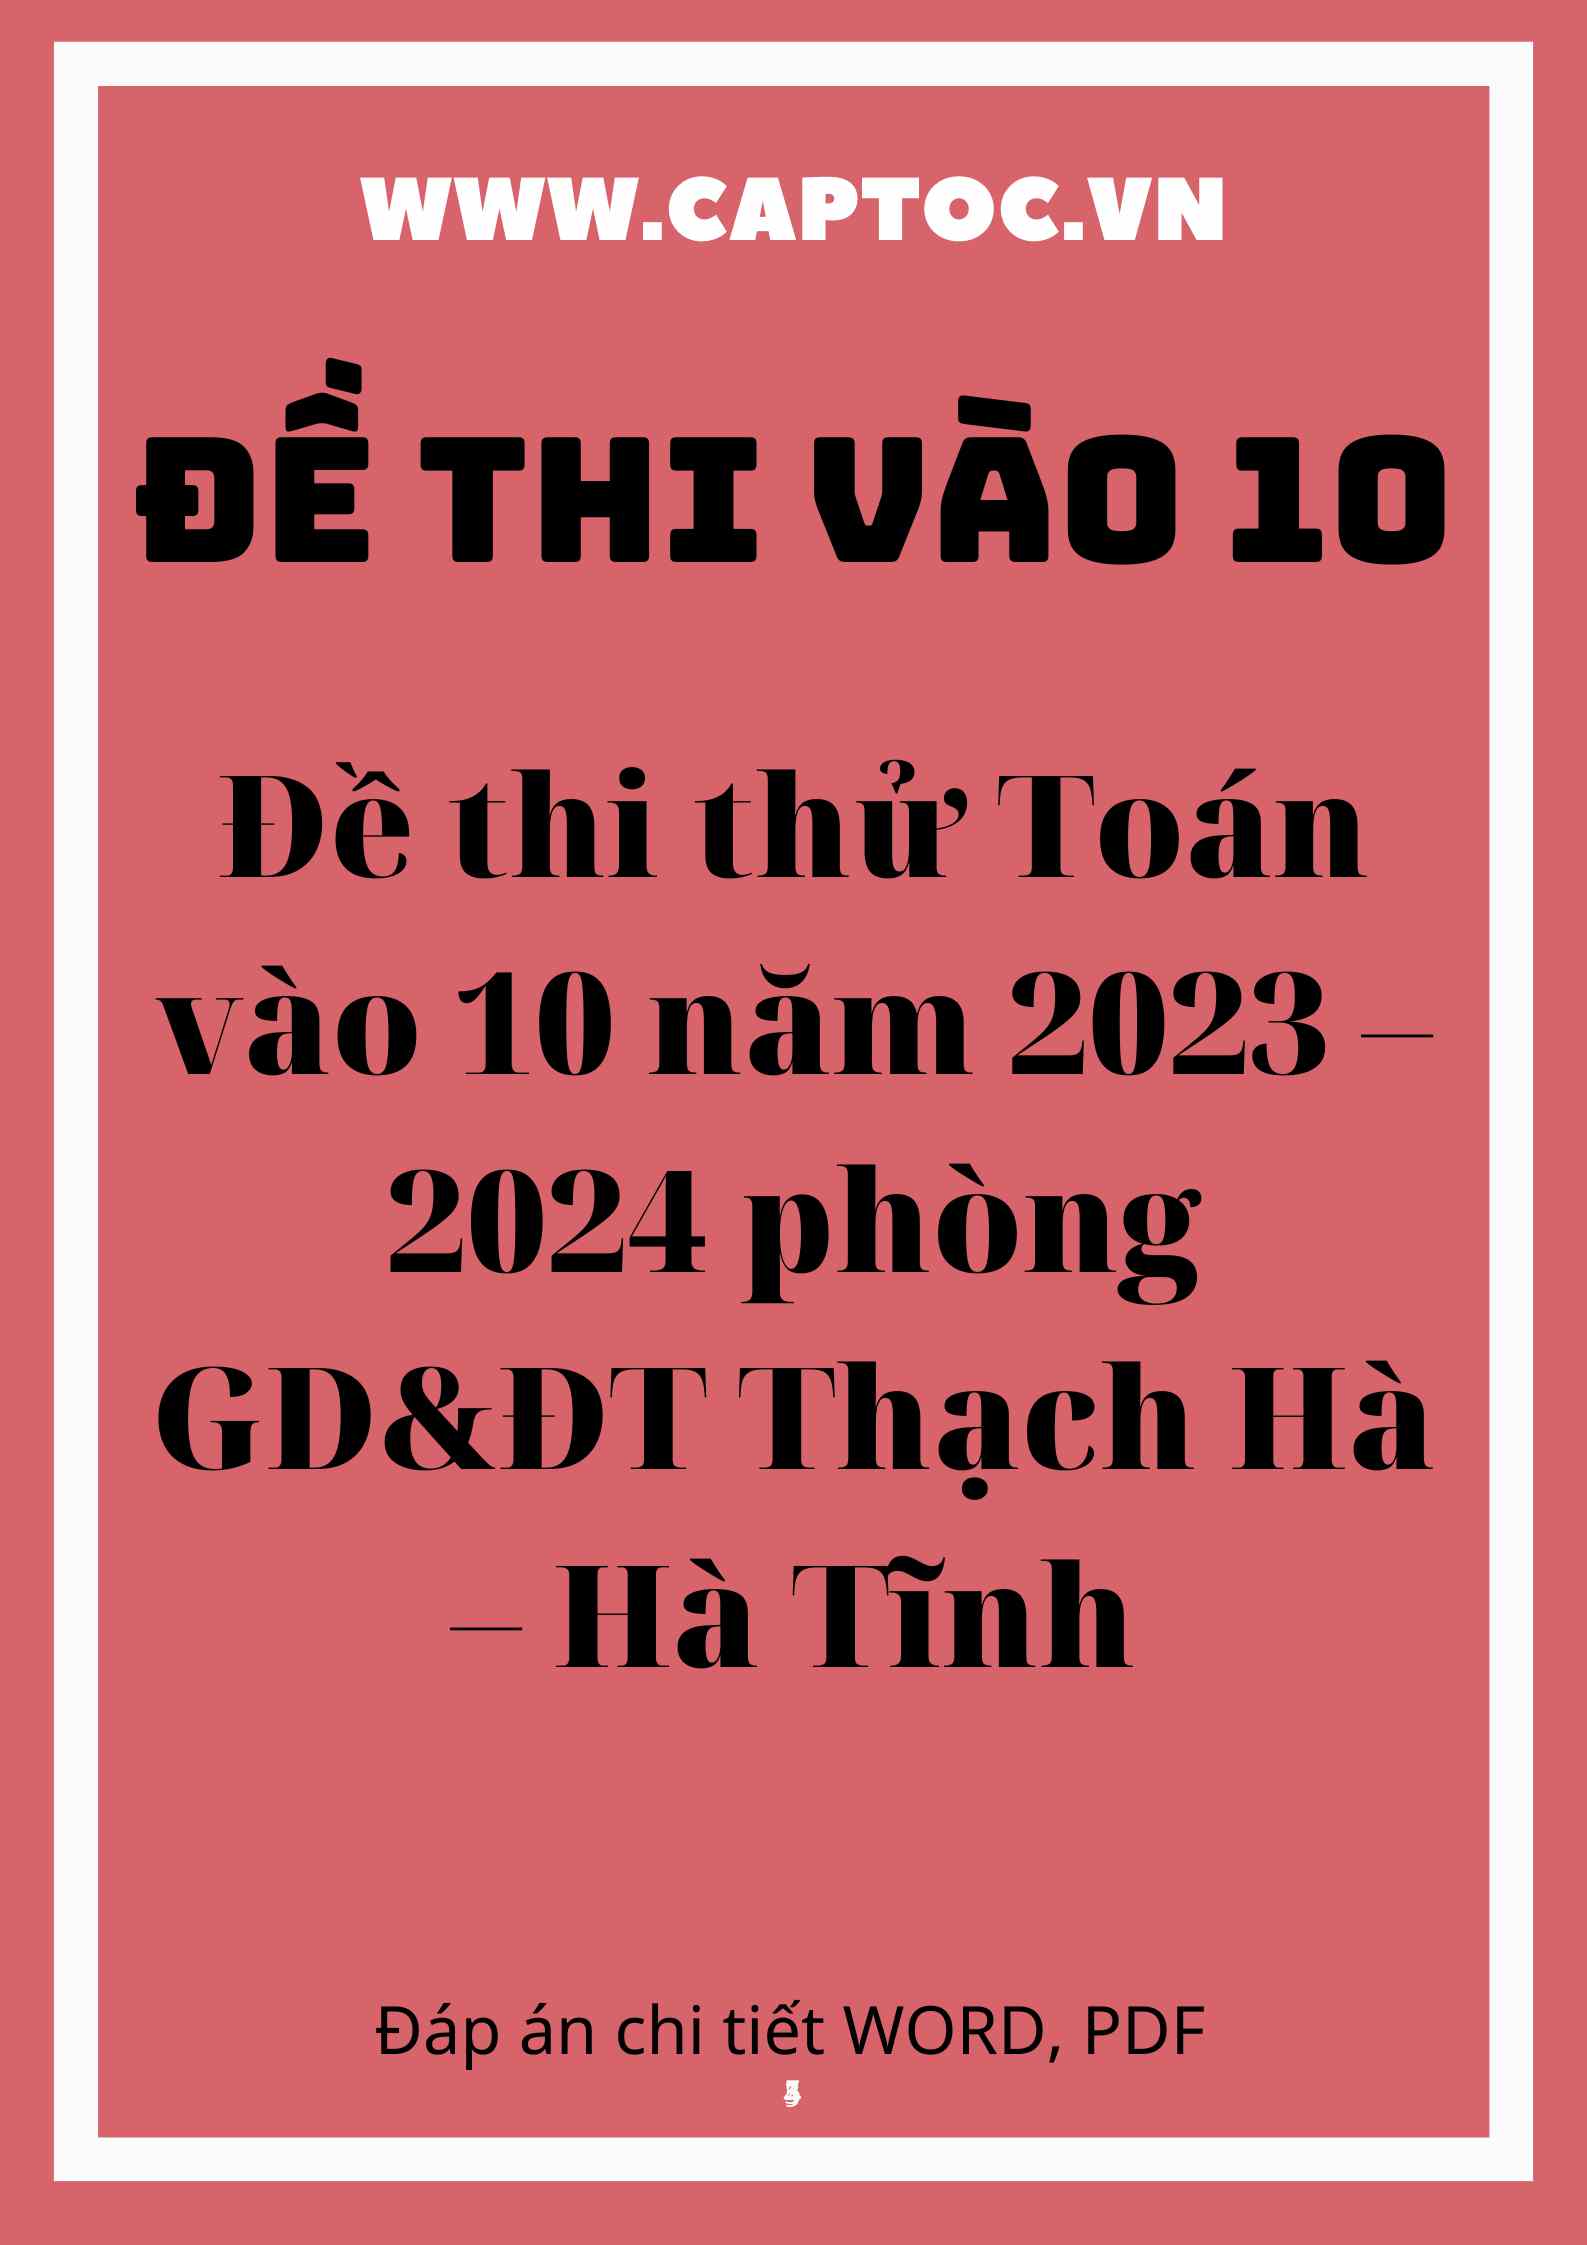 Đề thi thử Toán vào 10 năm 2023 – 2024 phòng GD&ĐT Thạch Hà – Hà Tĩnh